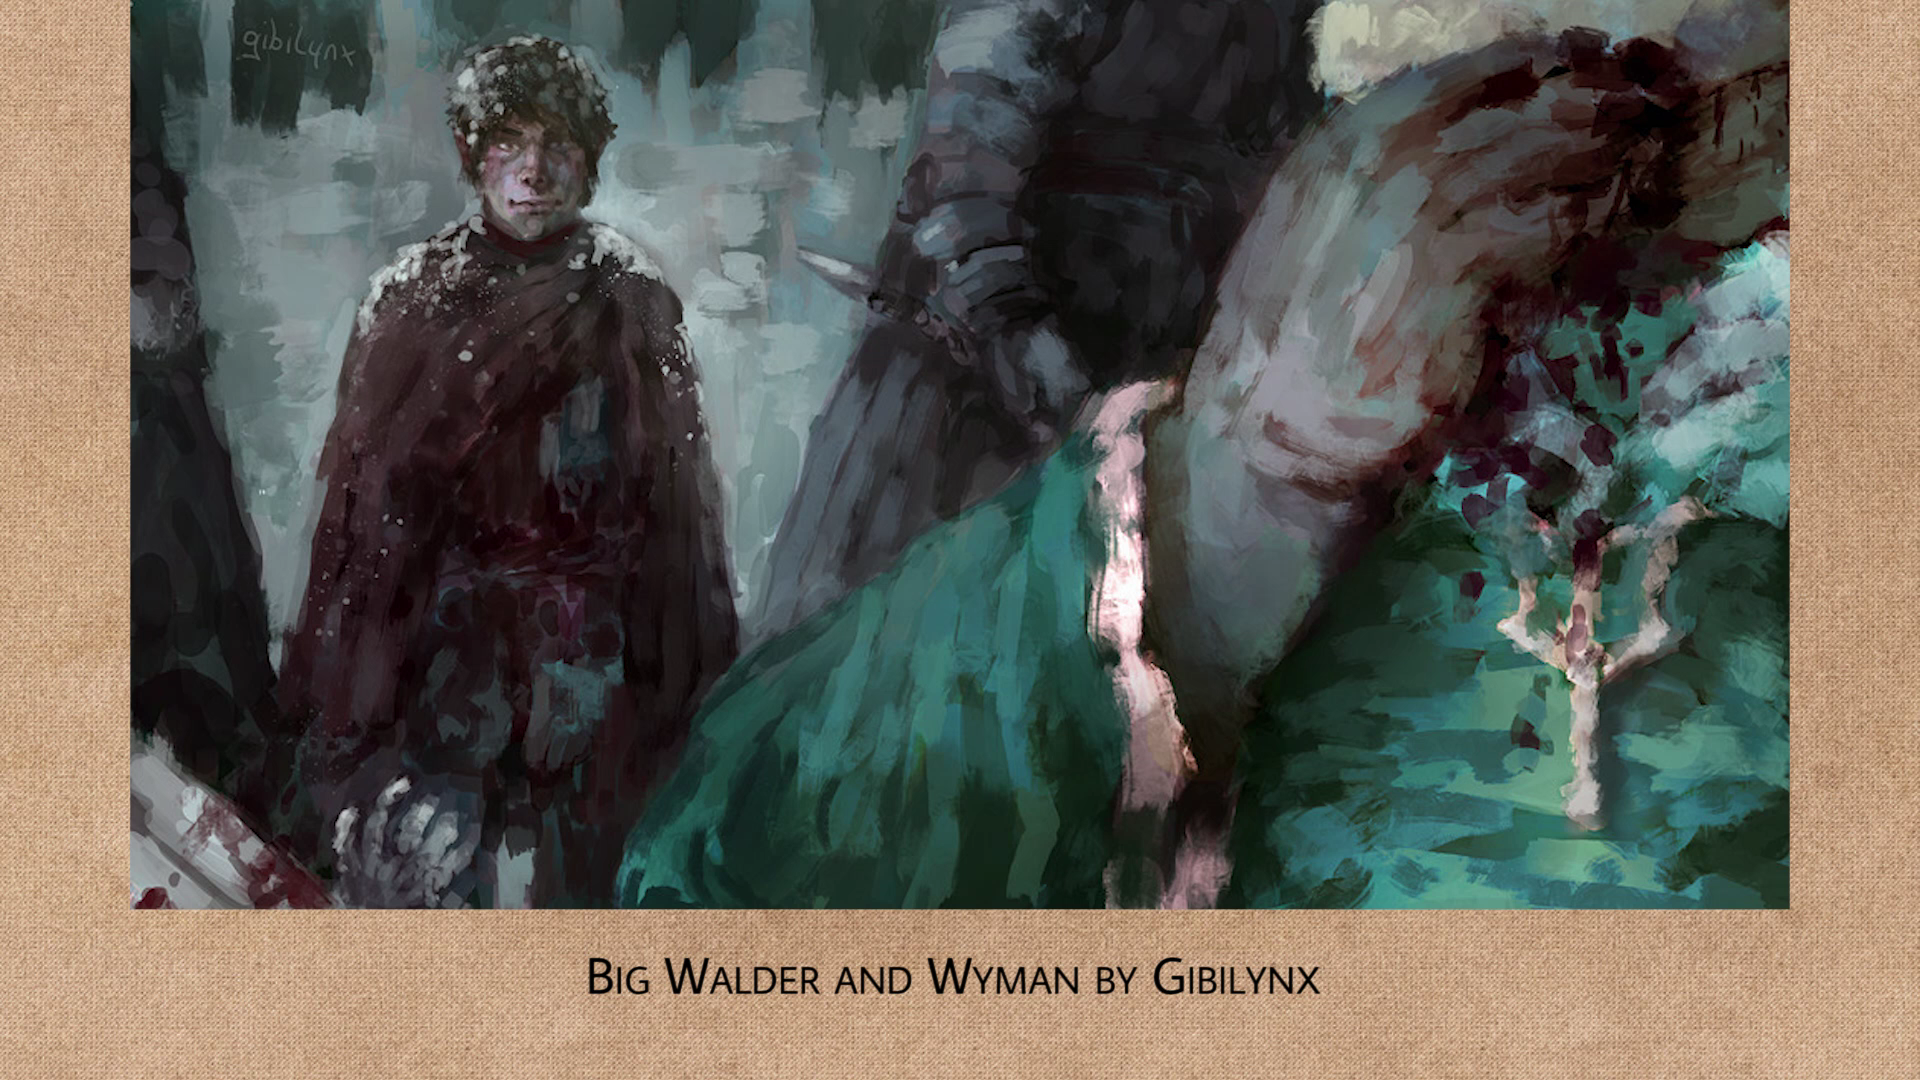 Big Walder and Wyman by GibiLynx